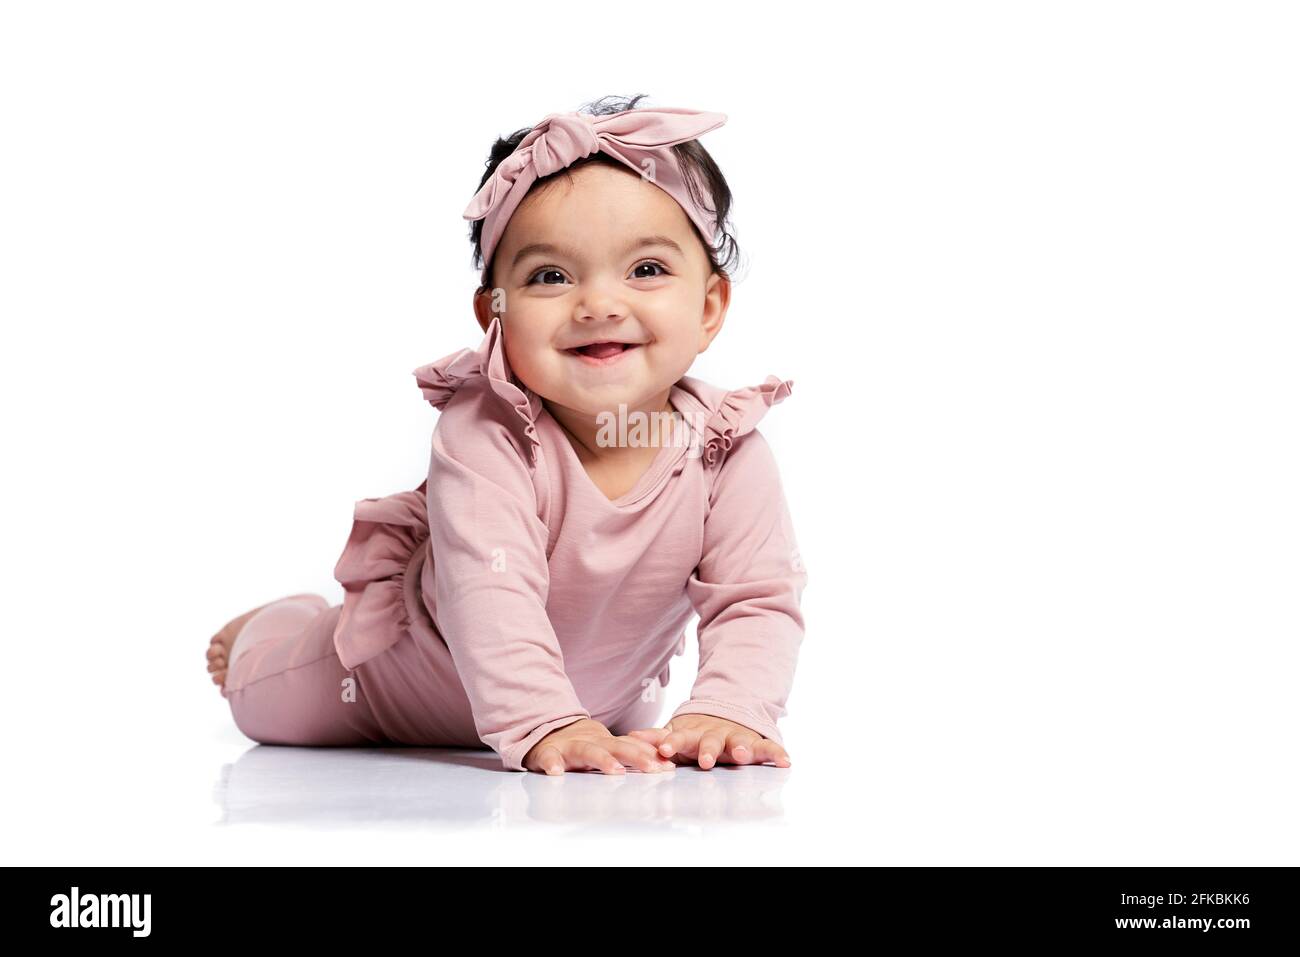 Niedliches weibliches Baby im schönen rosa Outfit, lächelnd mit offenem Mund und aufblickend. Attraktives kleines Baby, das auf dem Boden kriecht und posiert, isoliert auf Weiß Stockfoto